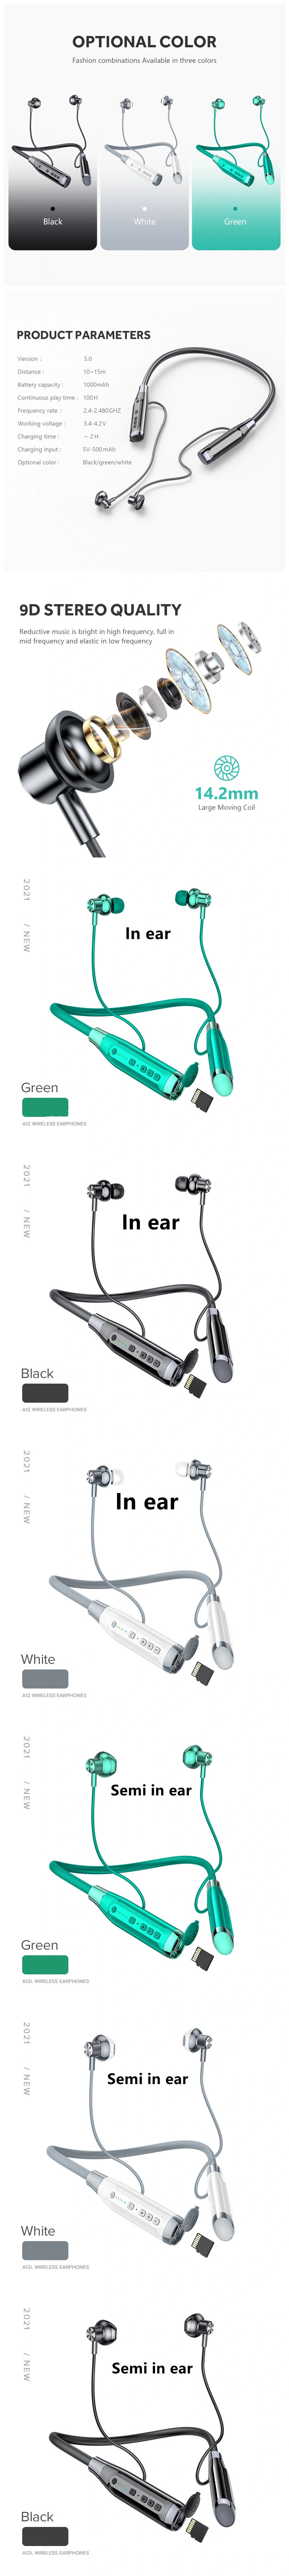 Tws Wireless Earphones Long Standby Semi in Ear Wireless Sports Neck Headset